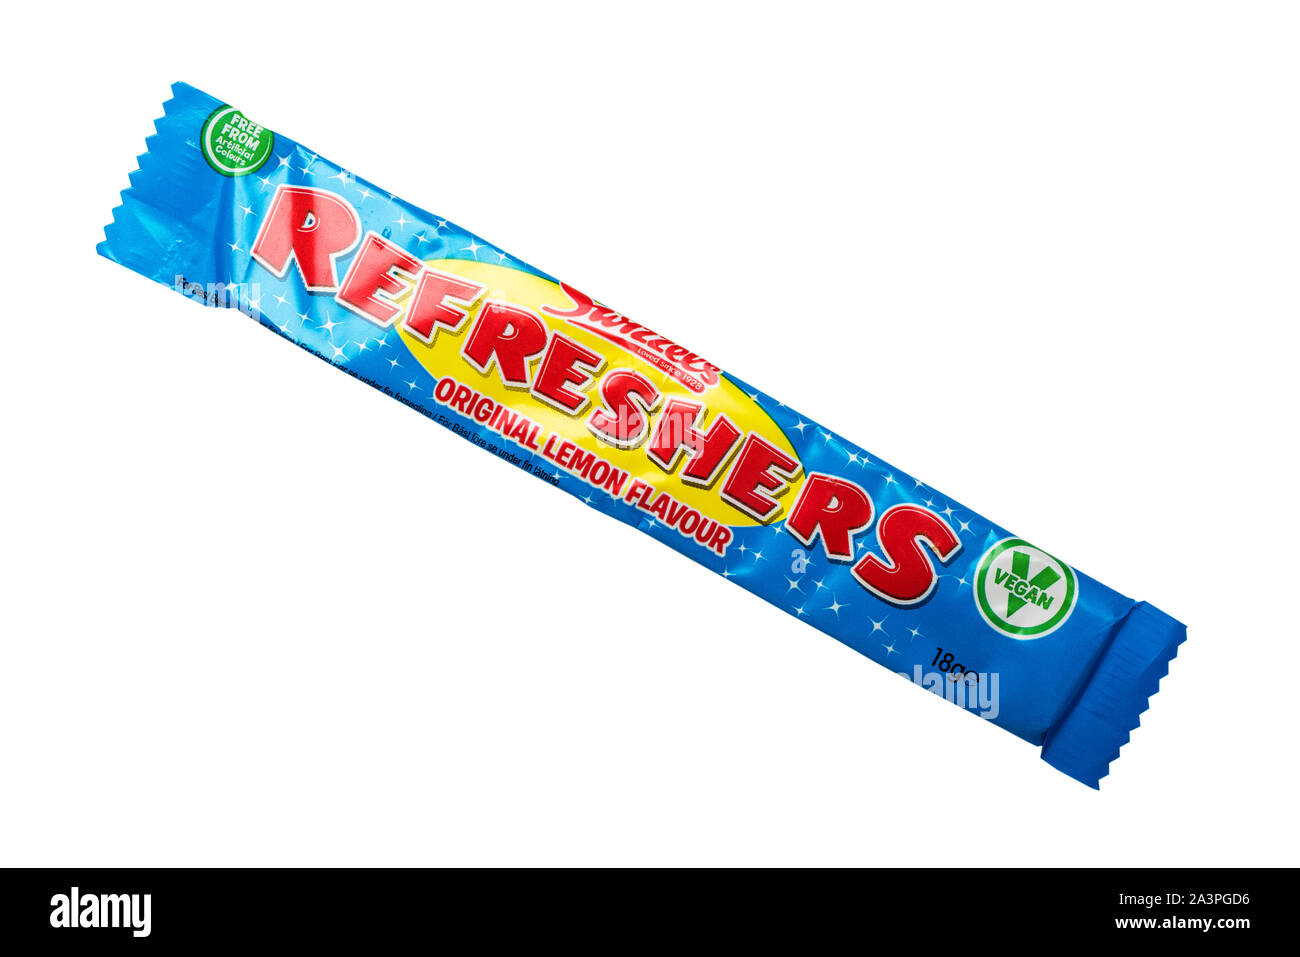 Eine Swizzels Frischmacher candy kauen Süßigkeiten auf weißem Hintergrund Stockfoto